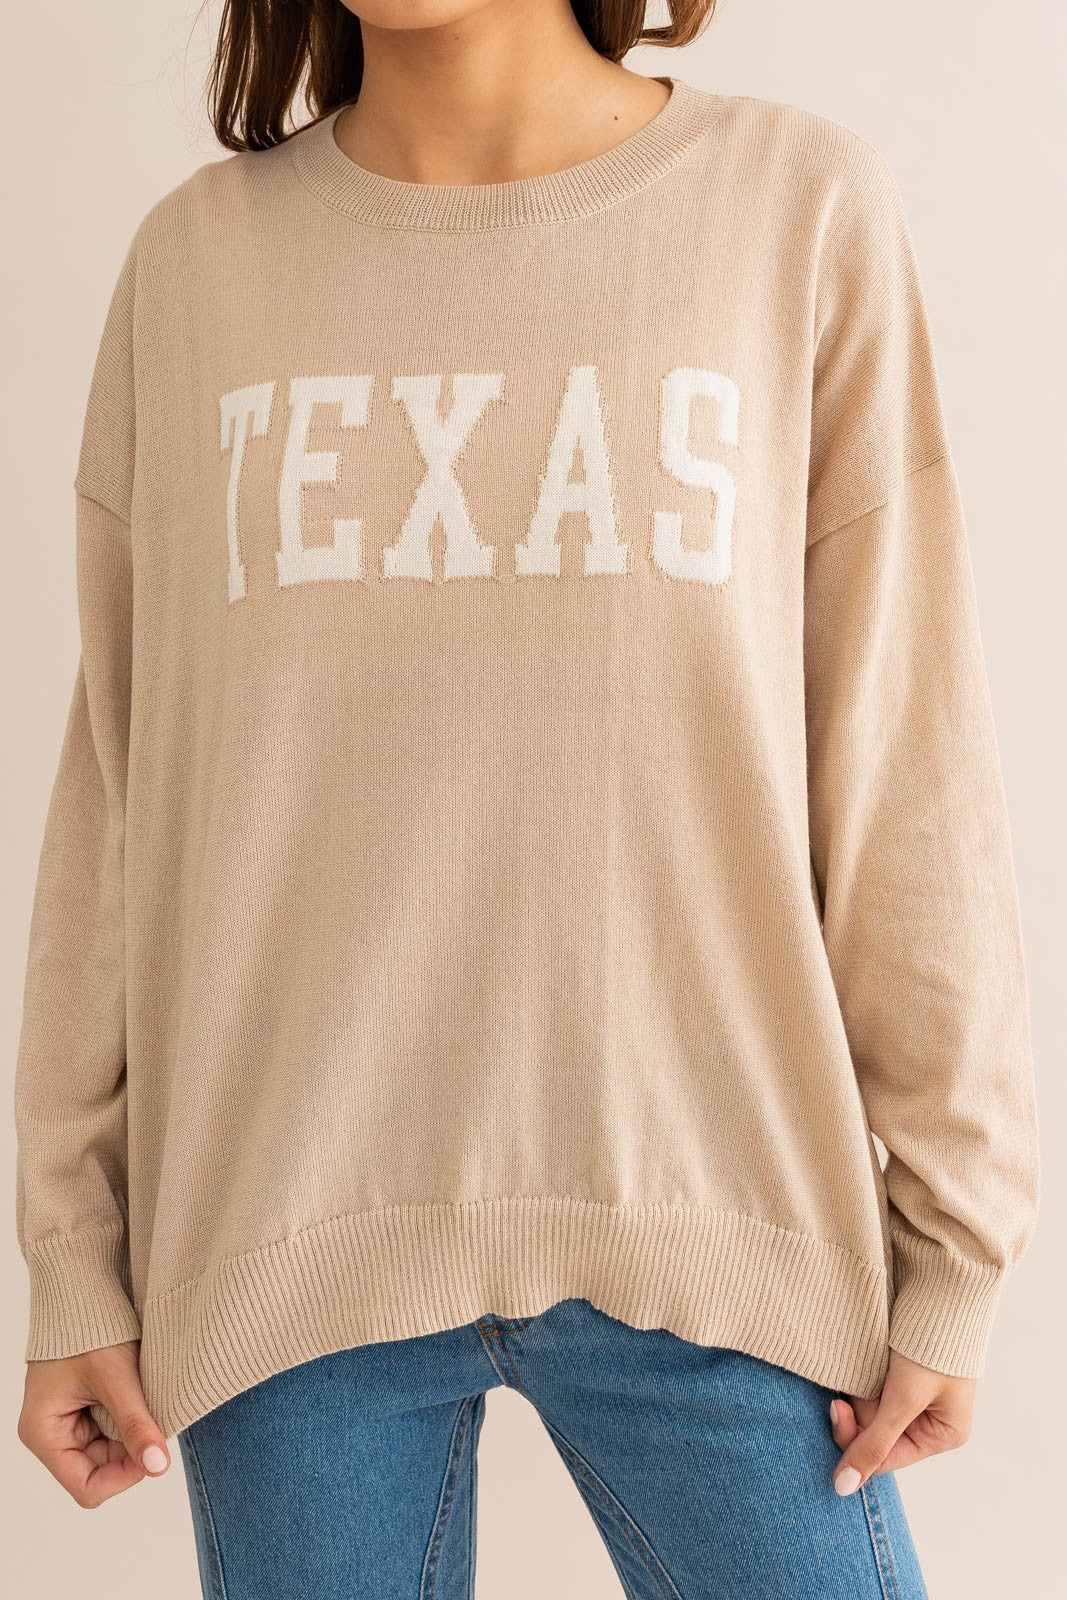 TEXAS lightweight sweater